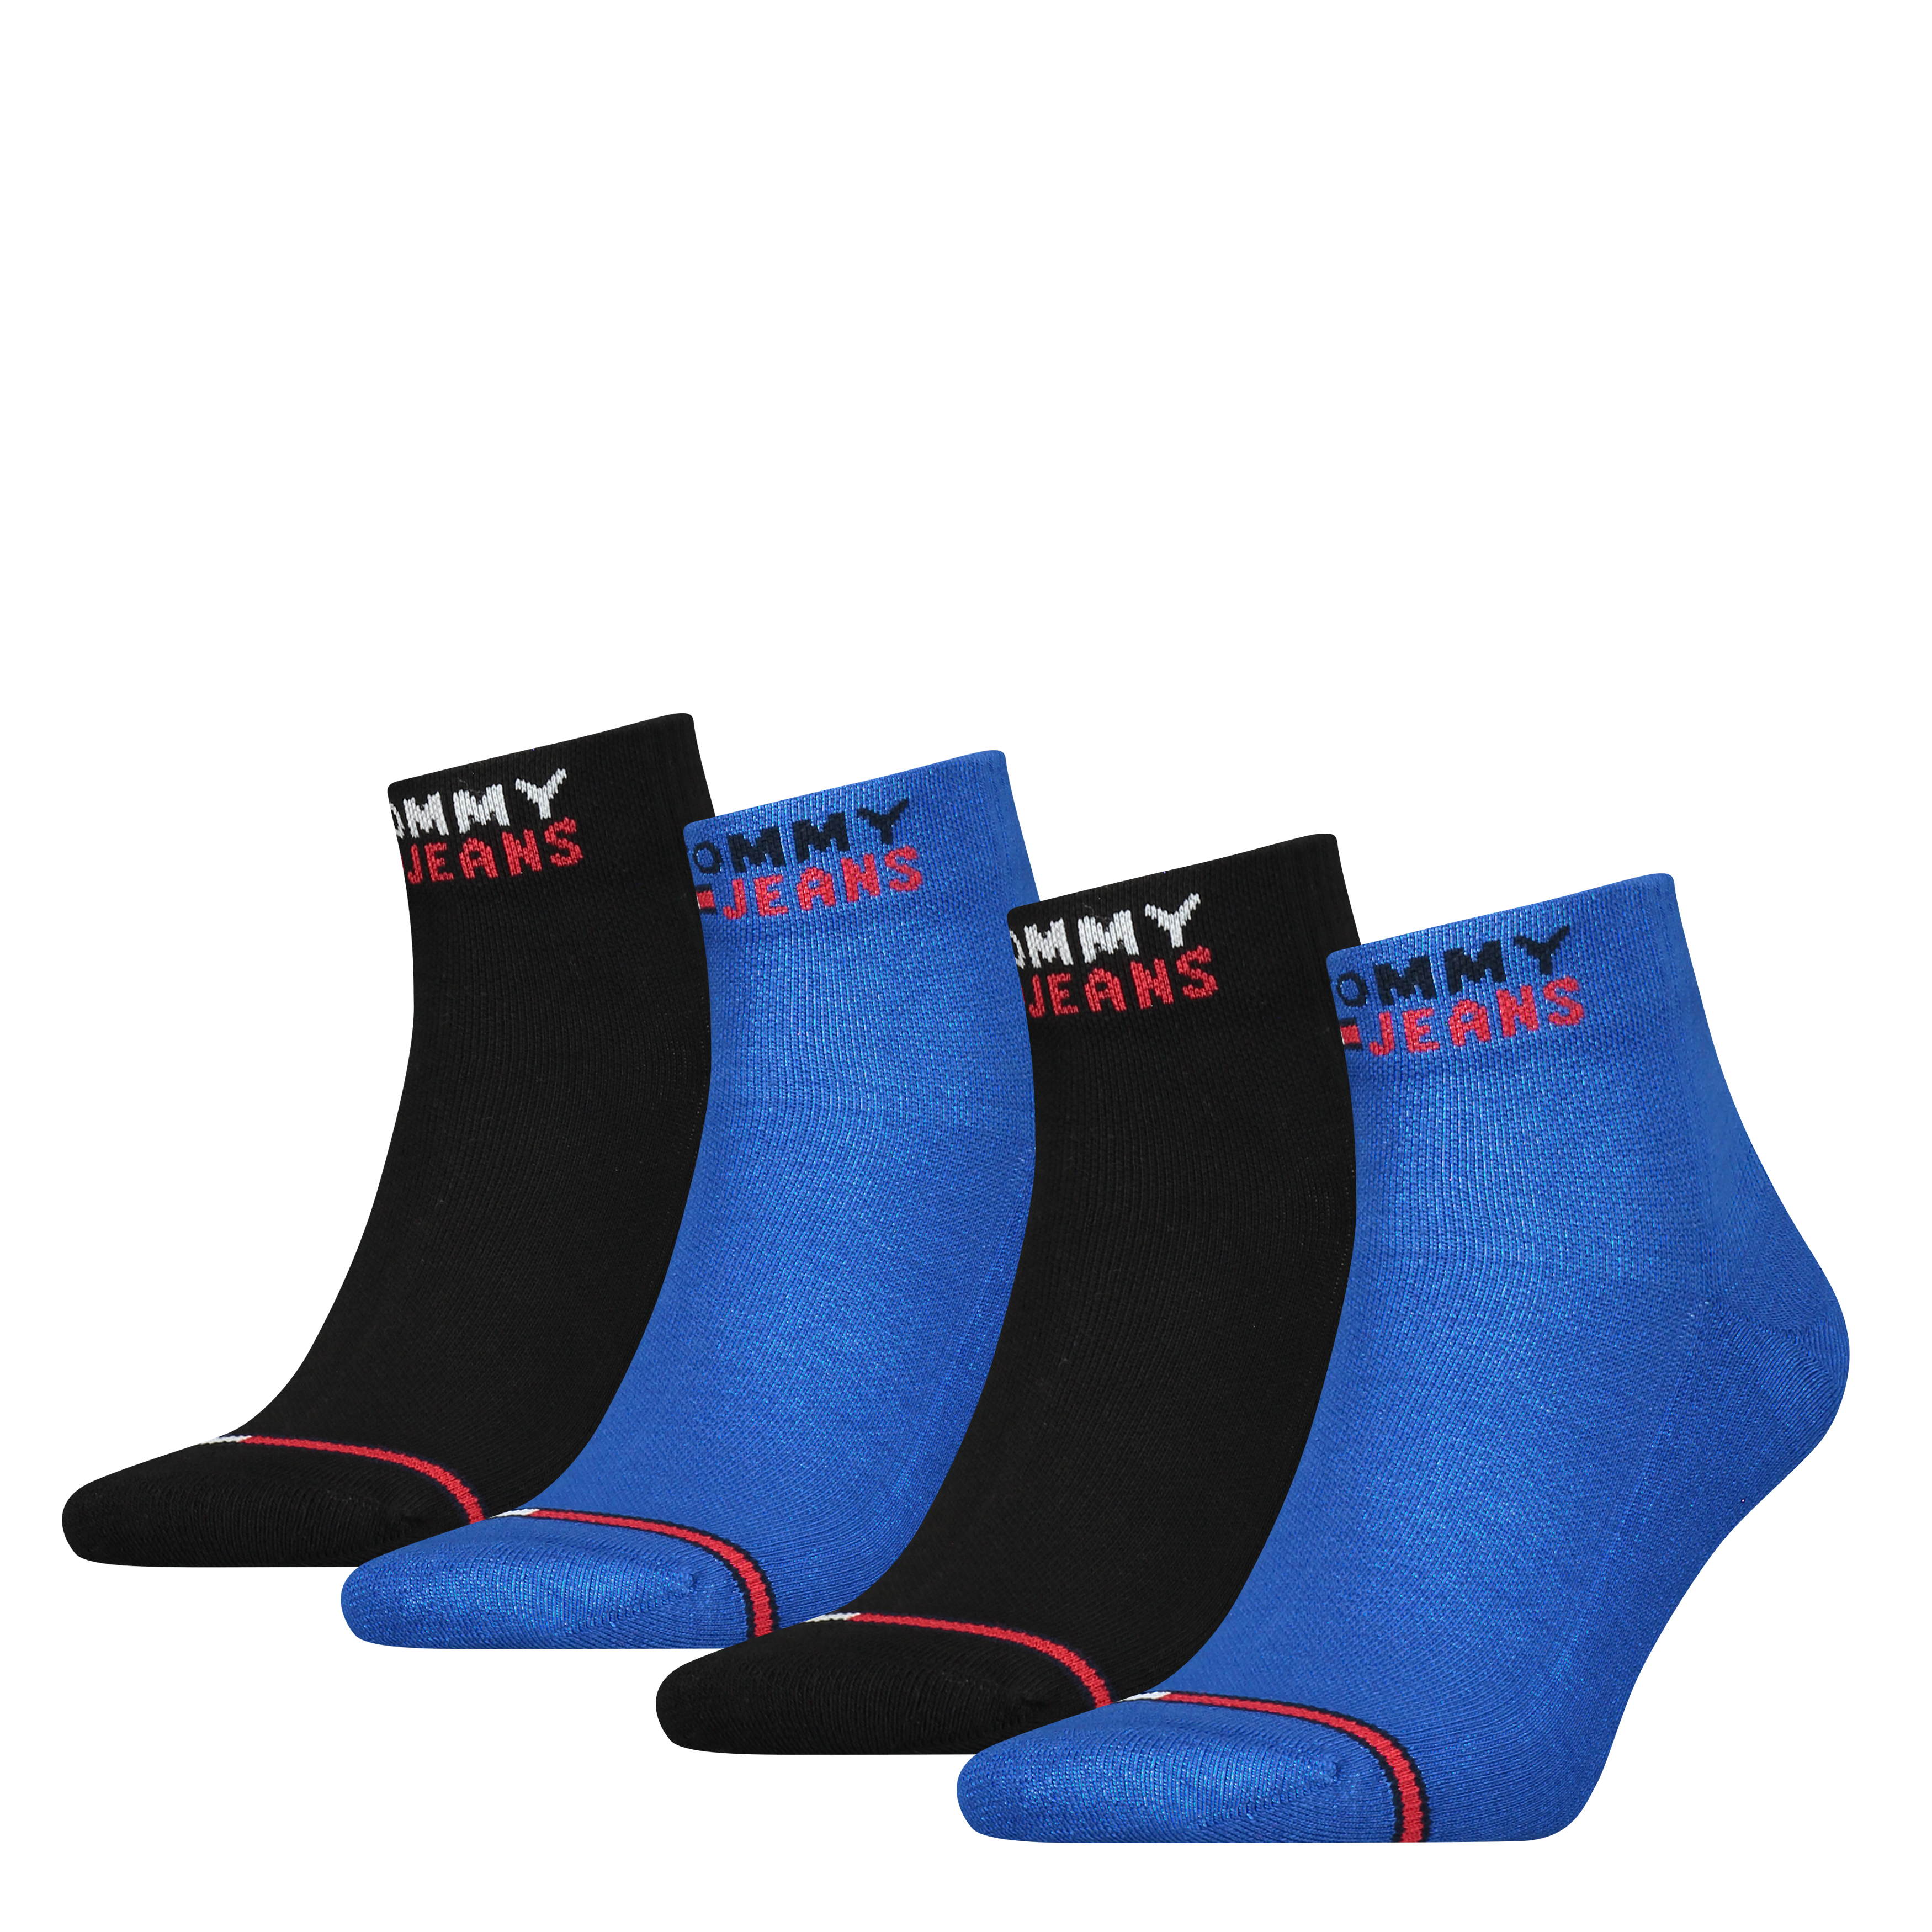 Tommy Hilfiger Jeans Man's 2Pack Socks 701227282001